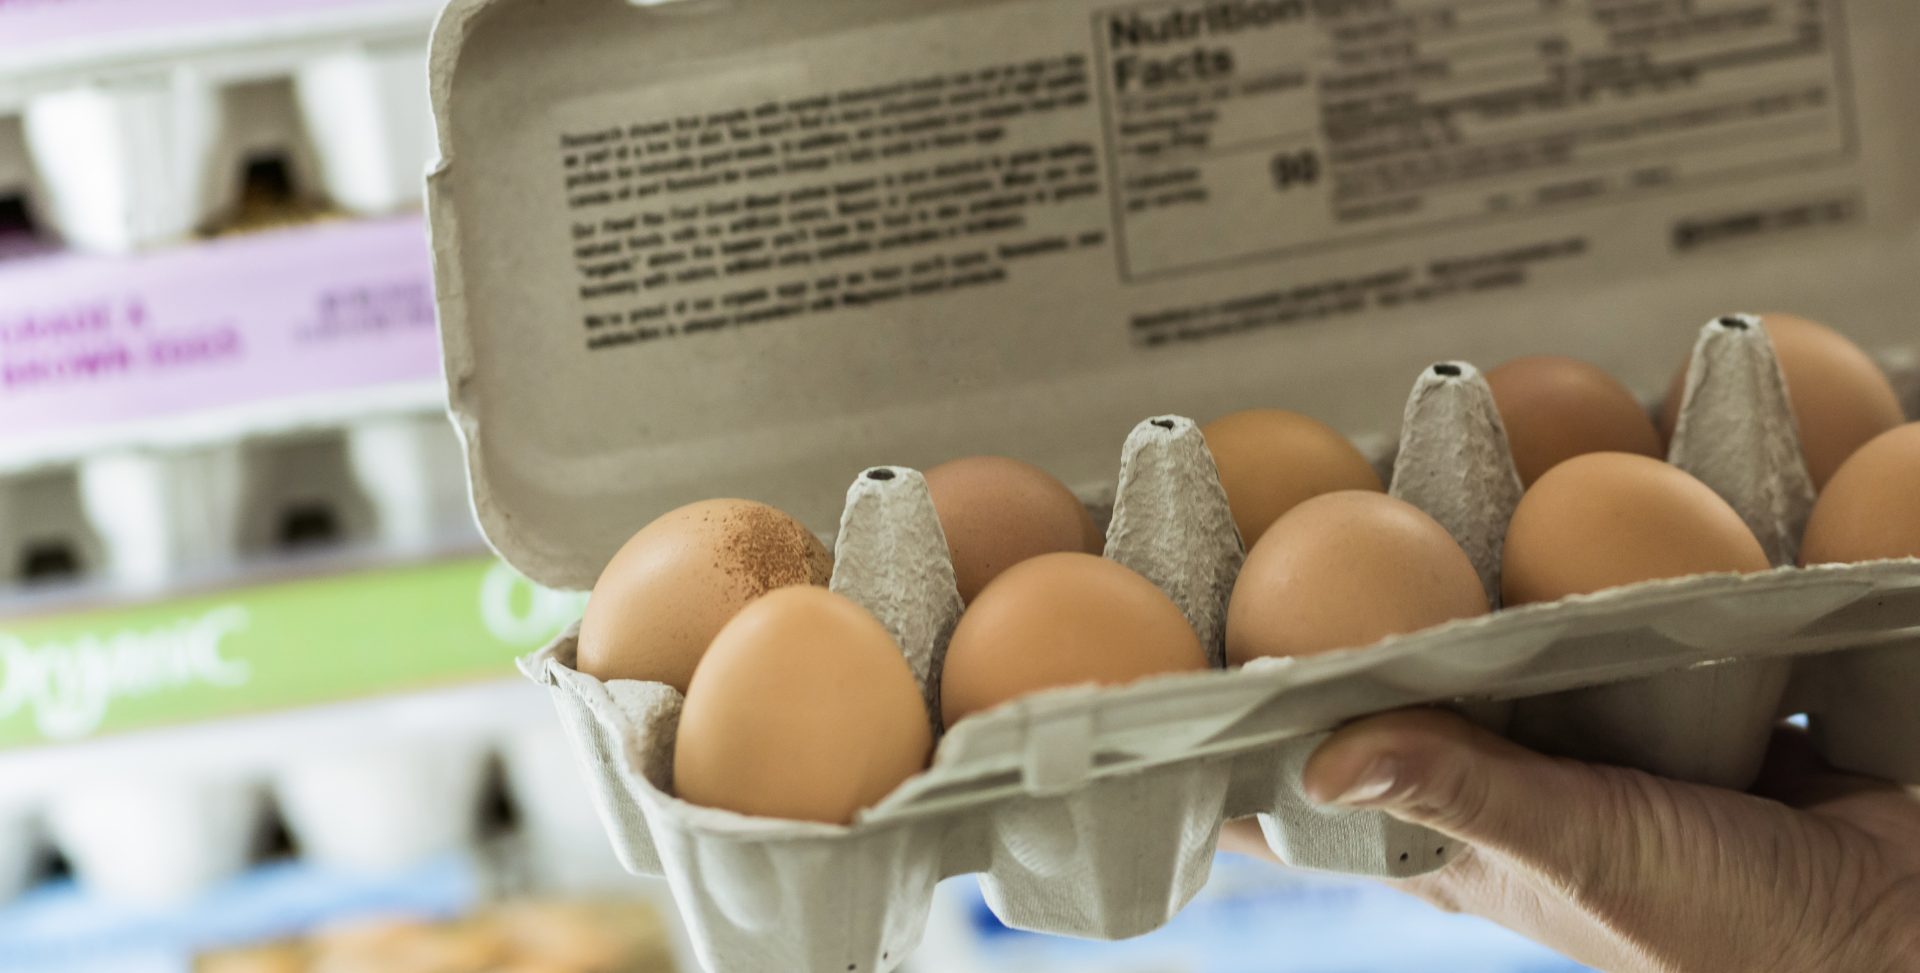 Où sont les œufs bon marché ?  Twitter stupéfait par les prix de l’épicerie